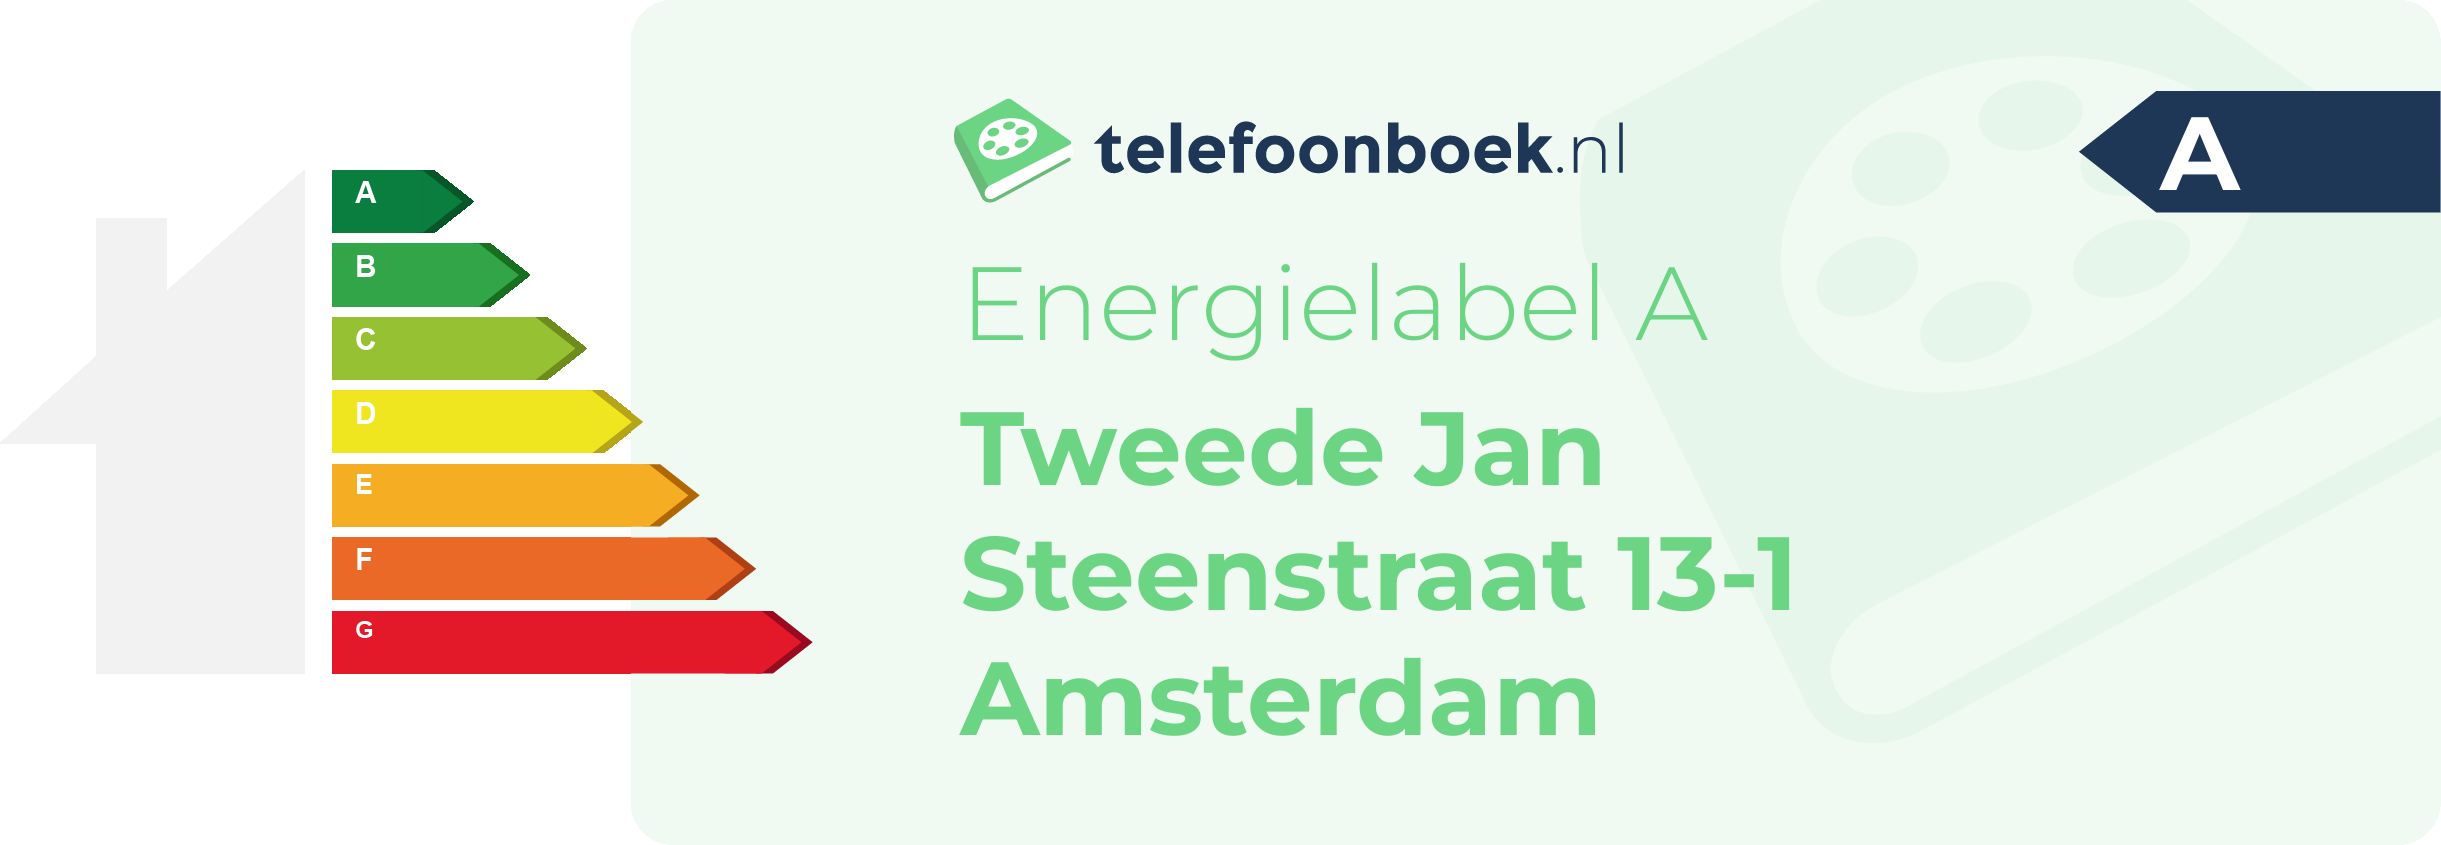 Energielabel Tweede Jan Steenstraat 13-1 Amsterdam